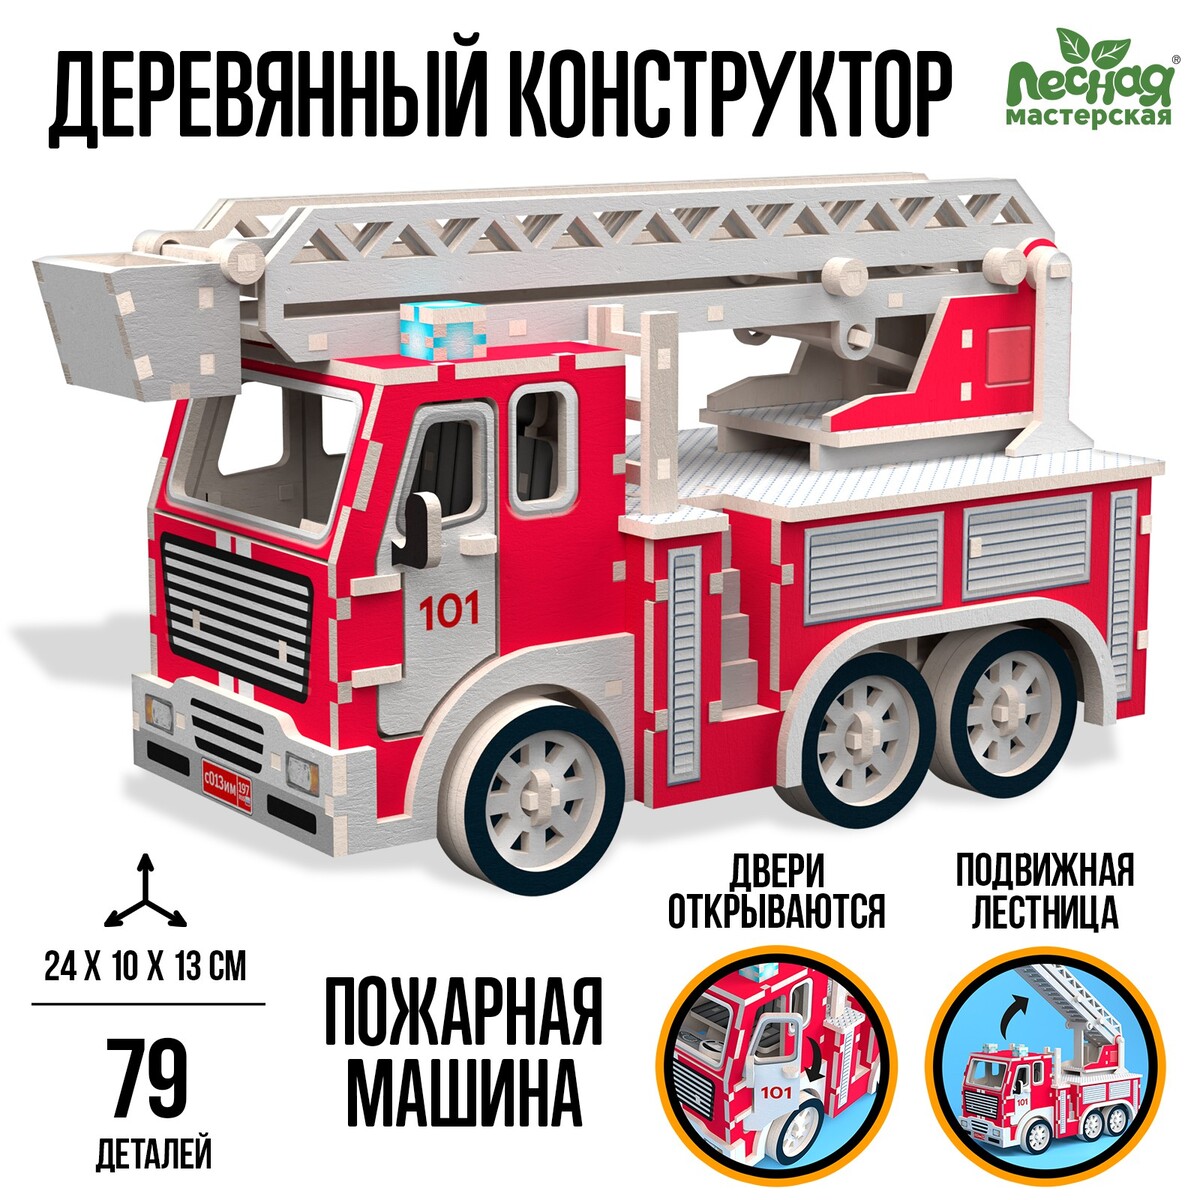 Деревянный конструктор комплект журналов по пожарной безопасности 10 журналов